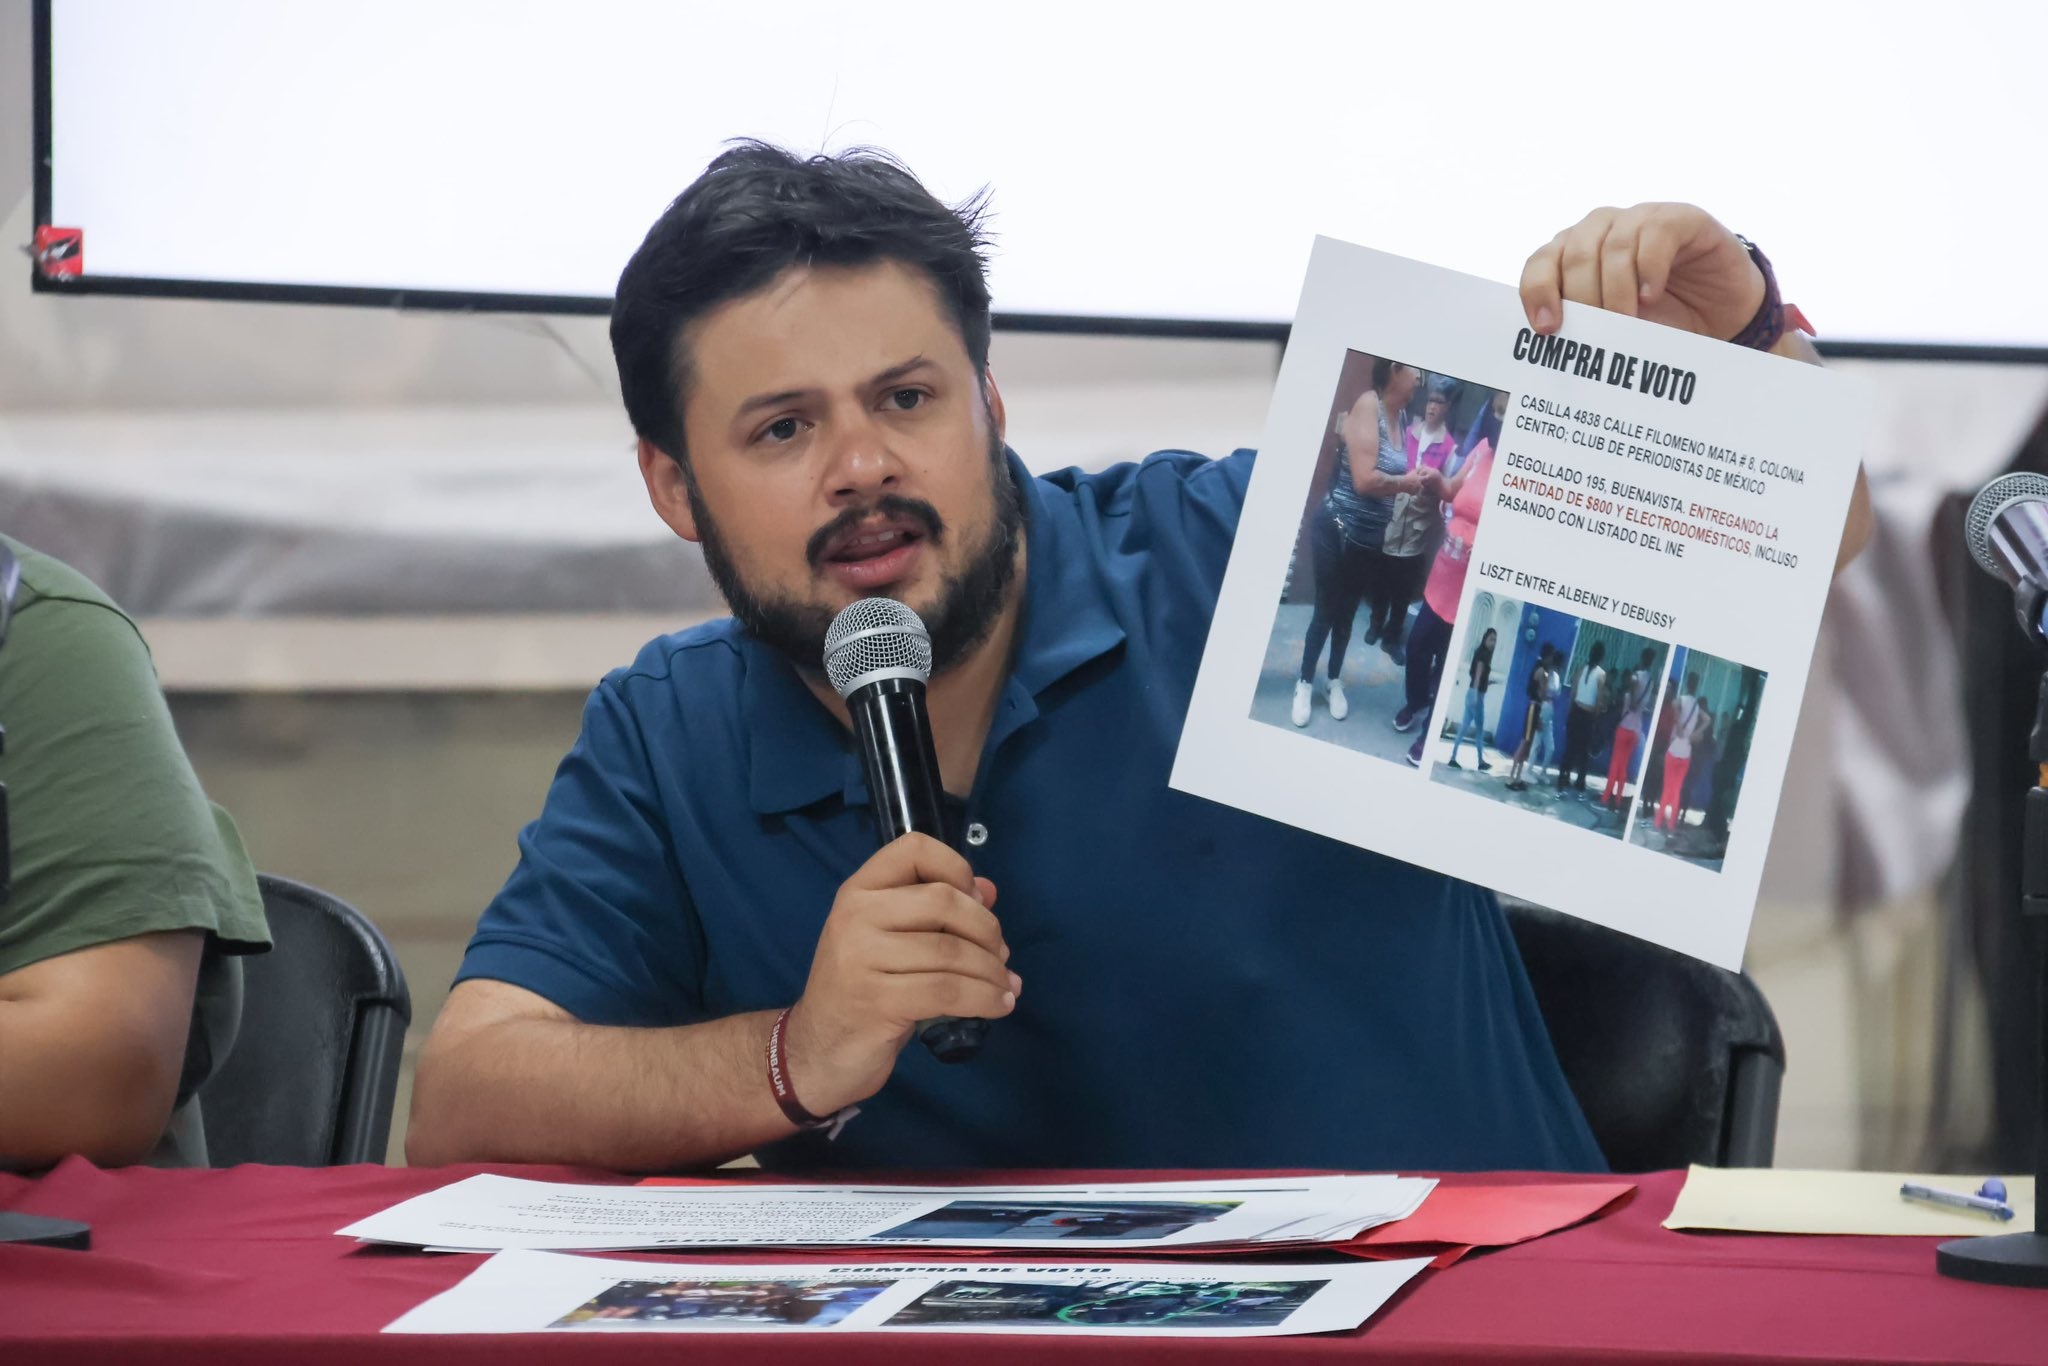 El presidente de Morena en la Ciudad de México, Sebastián Ramírez Mendoza, reconoció el trabajo de las y los consejeros del Instituto Electoral capitalino, los cuales actuaron en apego a lo que dicta la Ley Electoral, dijo. FOTO: Especial